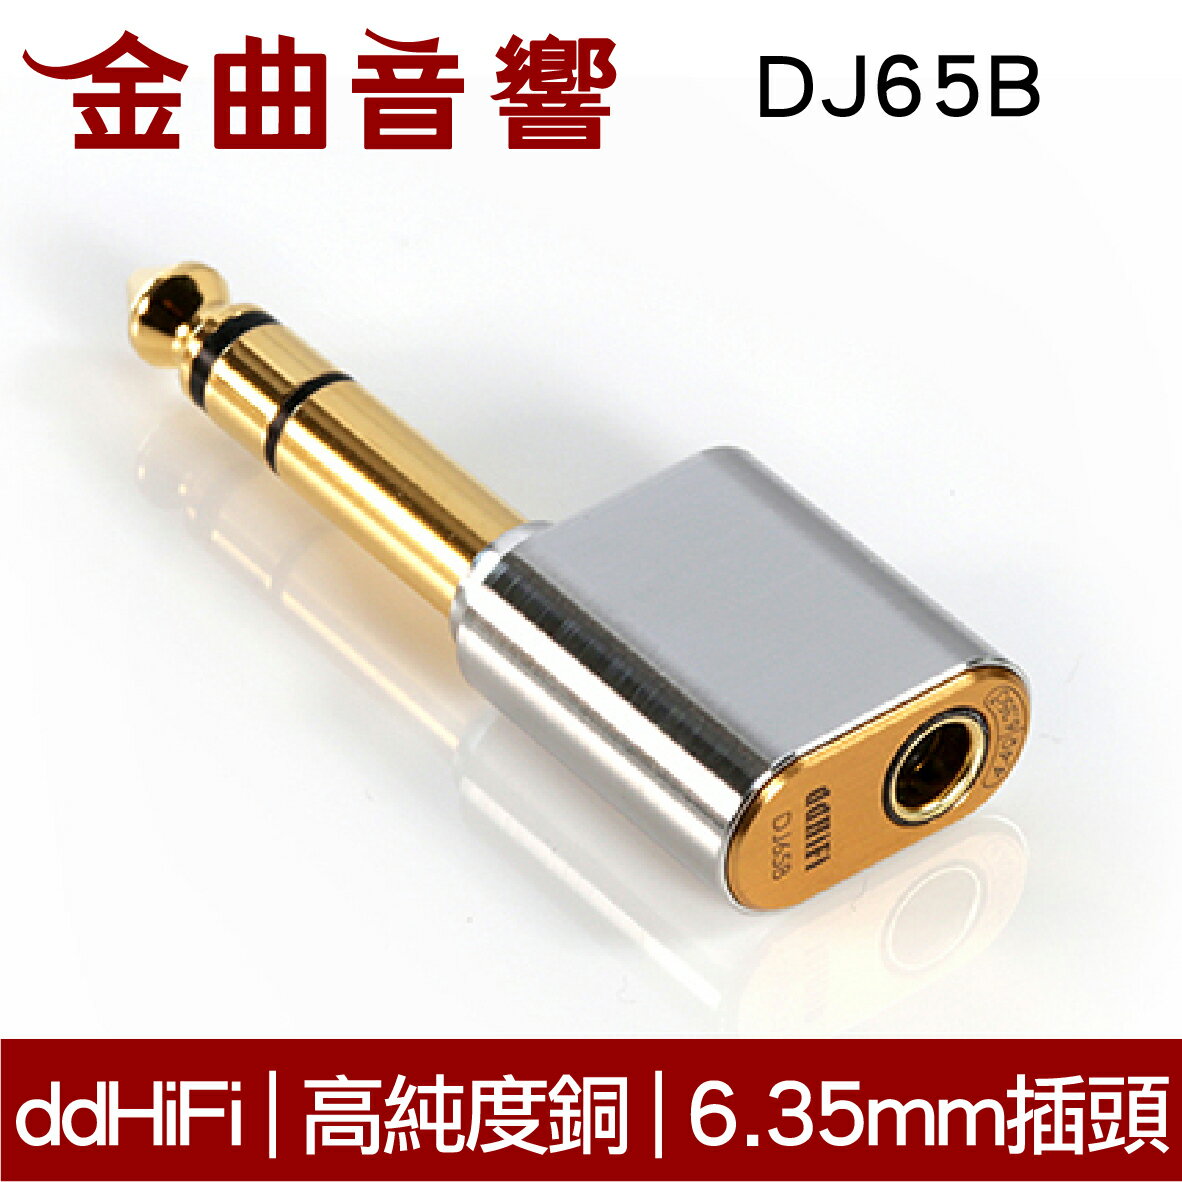 ddhifi dj65b 4.4mm平衡(母)轉6.35mm(公) 單晶銅導線 電鍍24k金 轉接頭 | 金曲音響